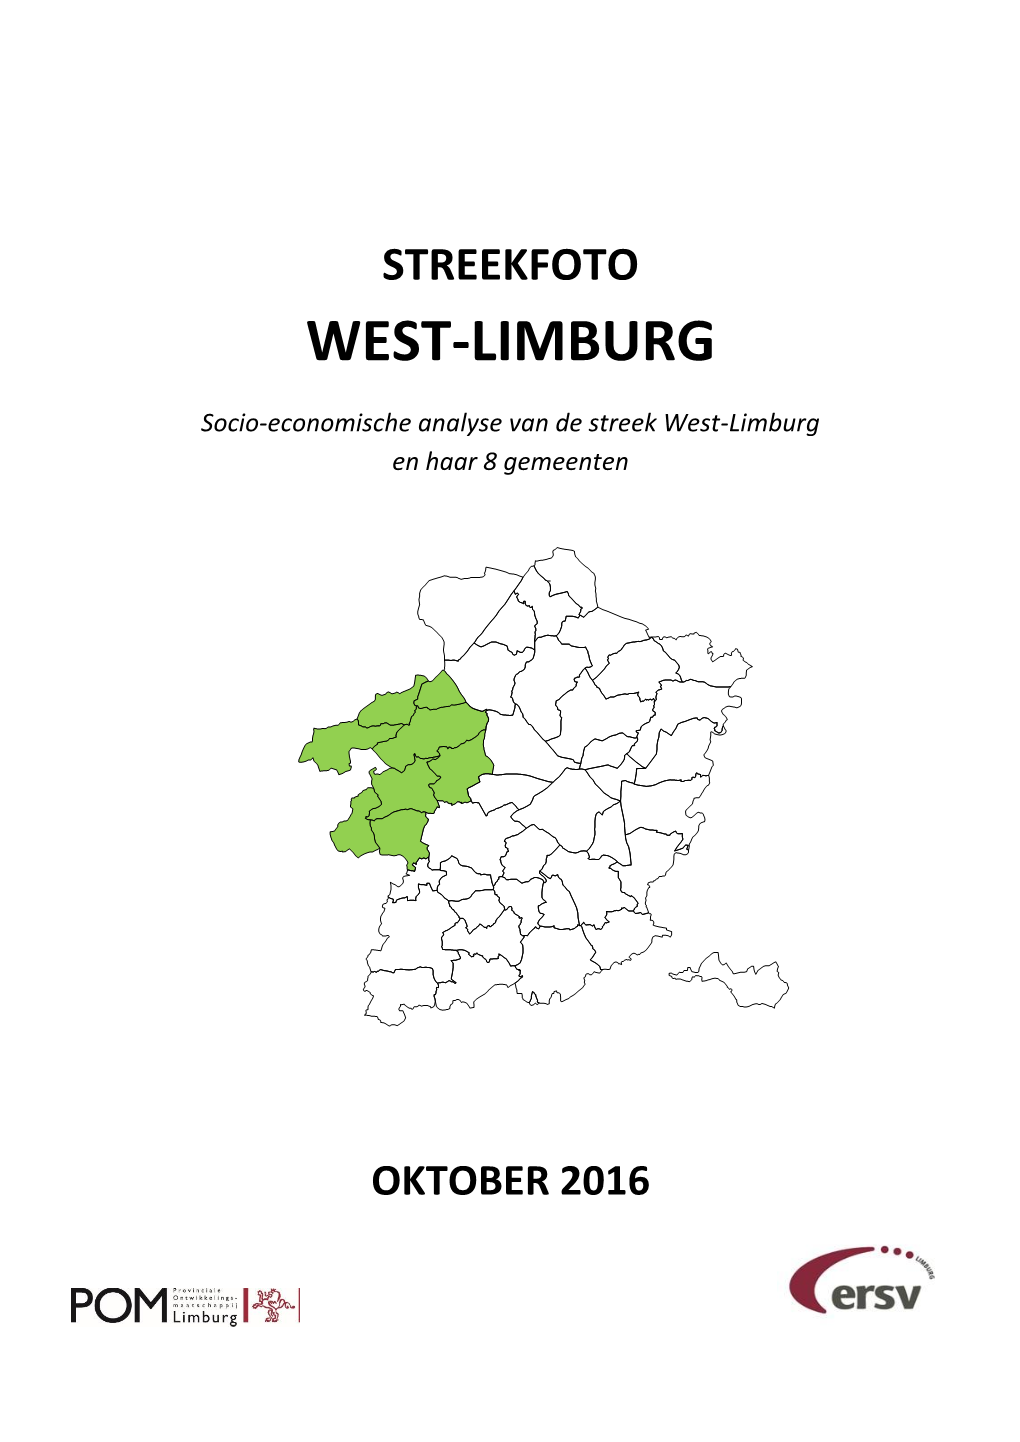 Streekfoto West-Limburg